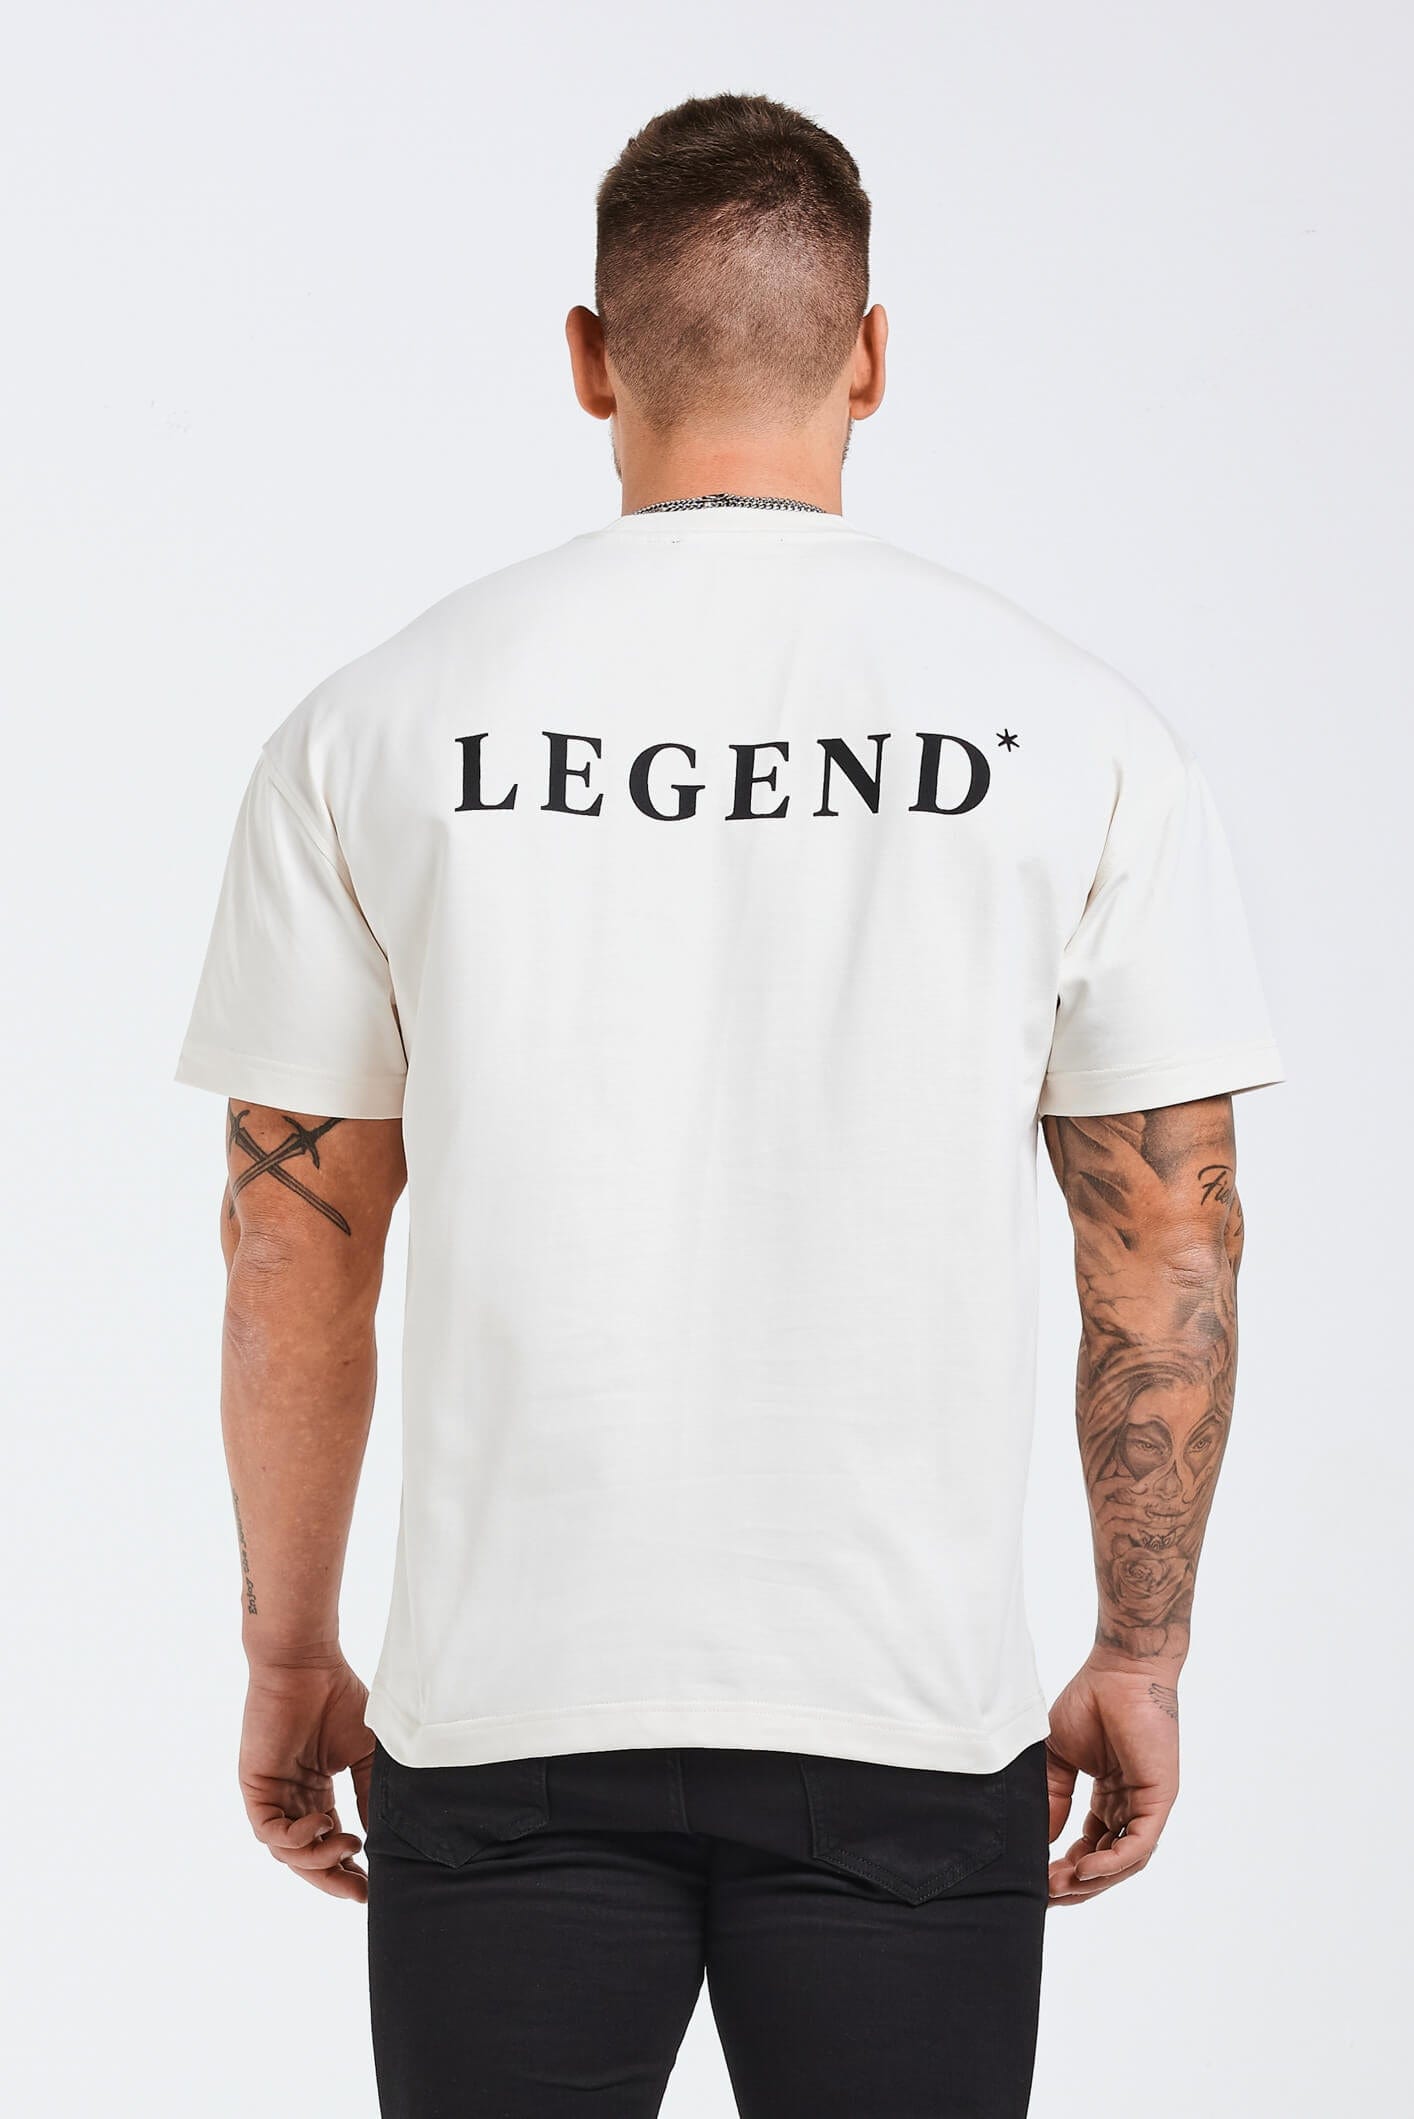 Legend London T-SHIRT HEAVYWEIGHT LEGEND T-SHIRT - CREAM